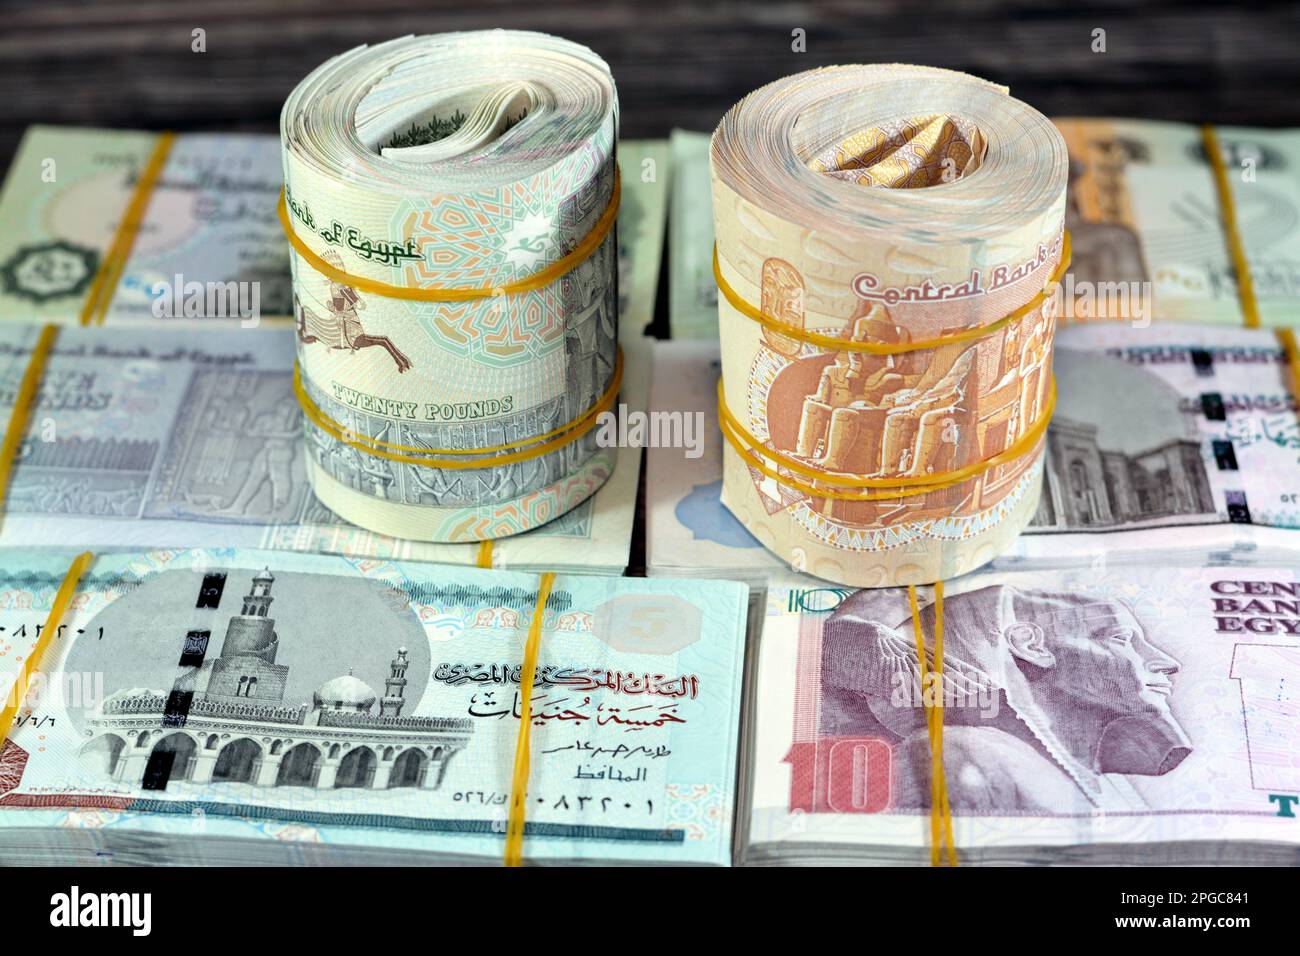 Bündel, Rollen, Stapel und Stapel ägyptischer Bargeld-Banknoten, die mit  Gummibändern in verschiedenen Wechselwerten von 1 LE, 5, 10, 20 EGP  aufgerollt wurden Stockfotografie - Alamy